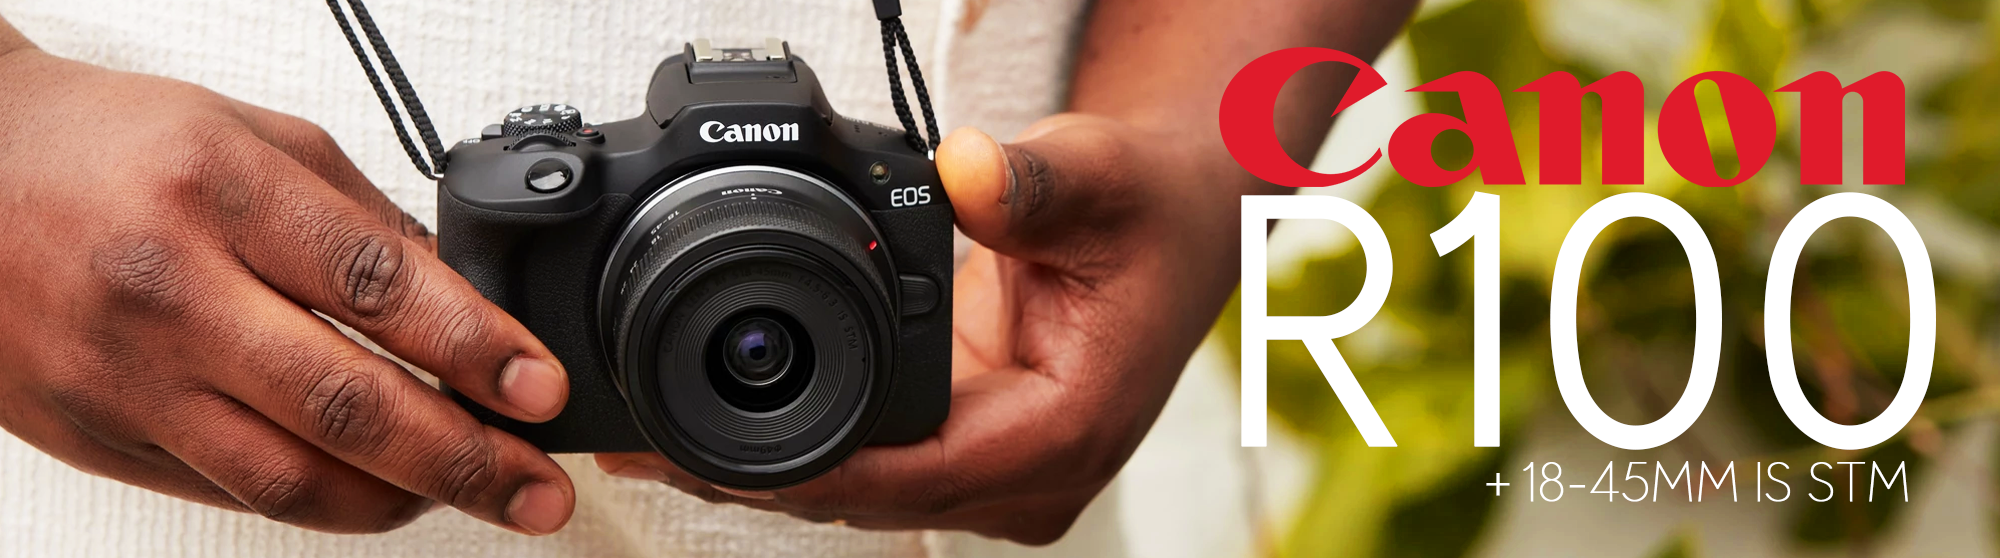 Canon EOS R100 Original Camara Sin Espejo disponible para compra en Colombia